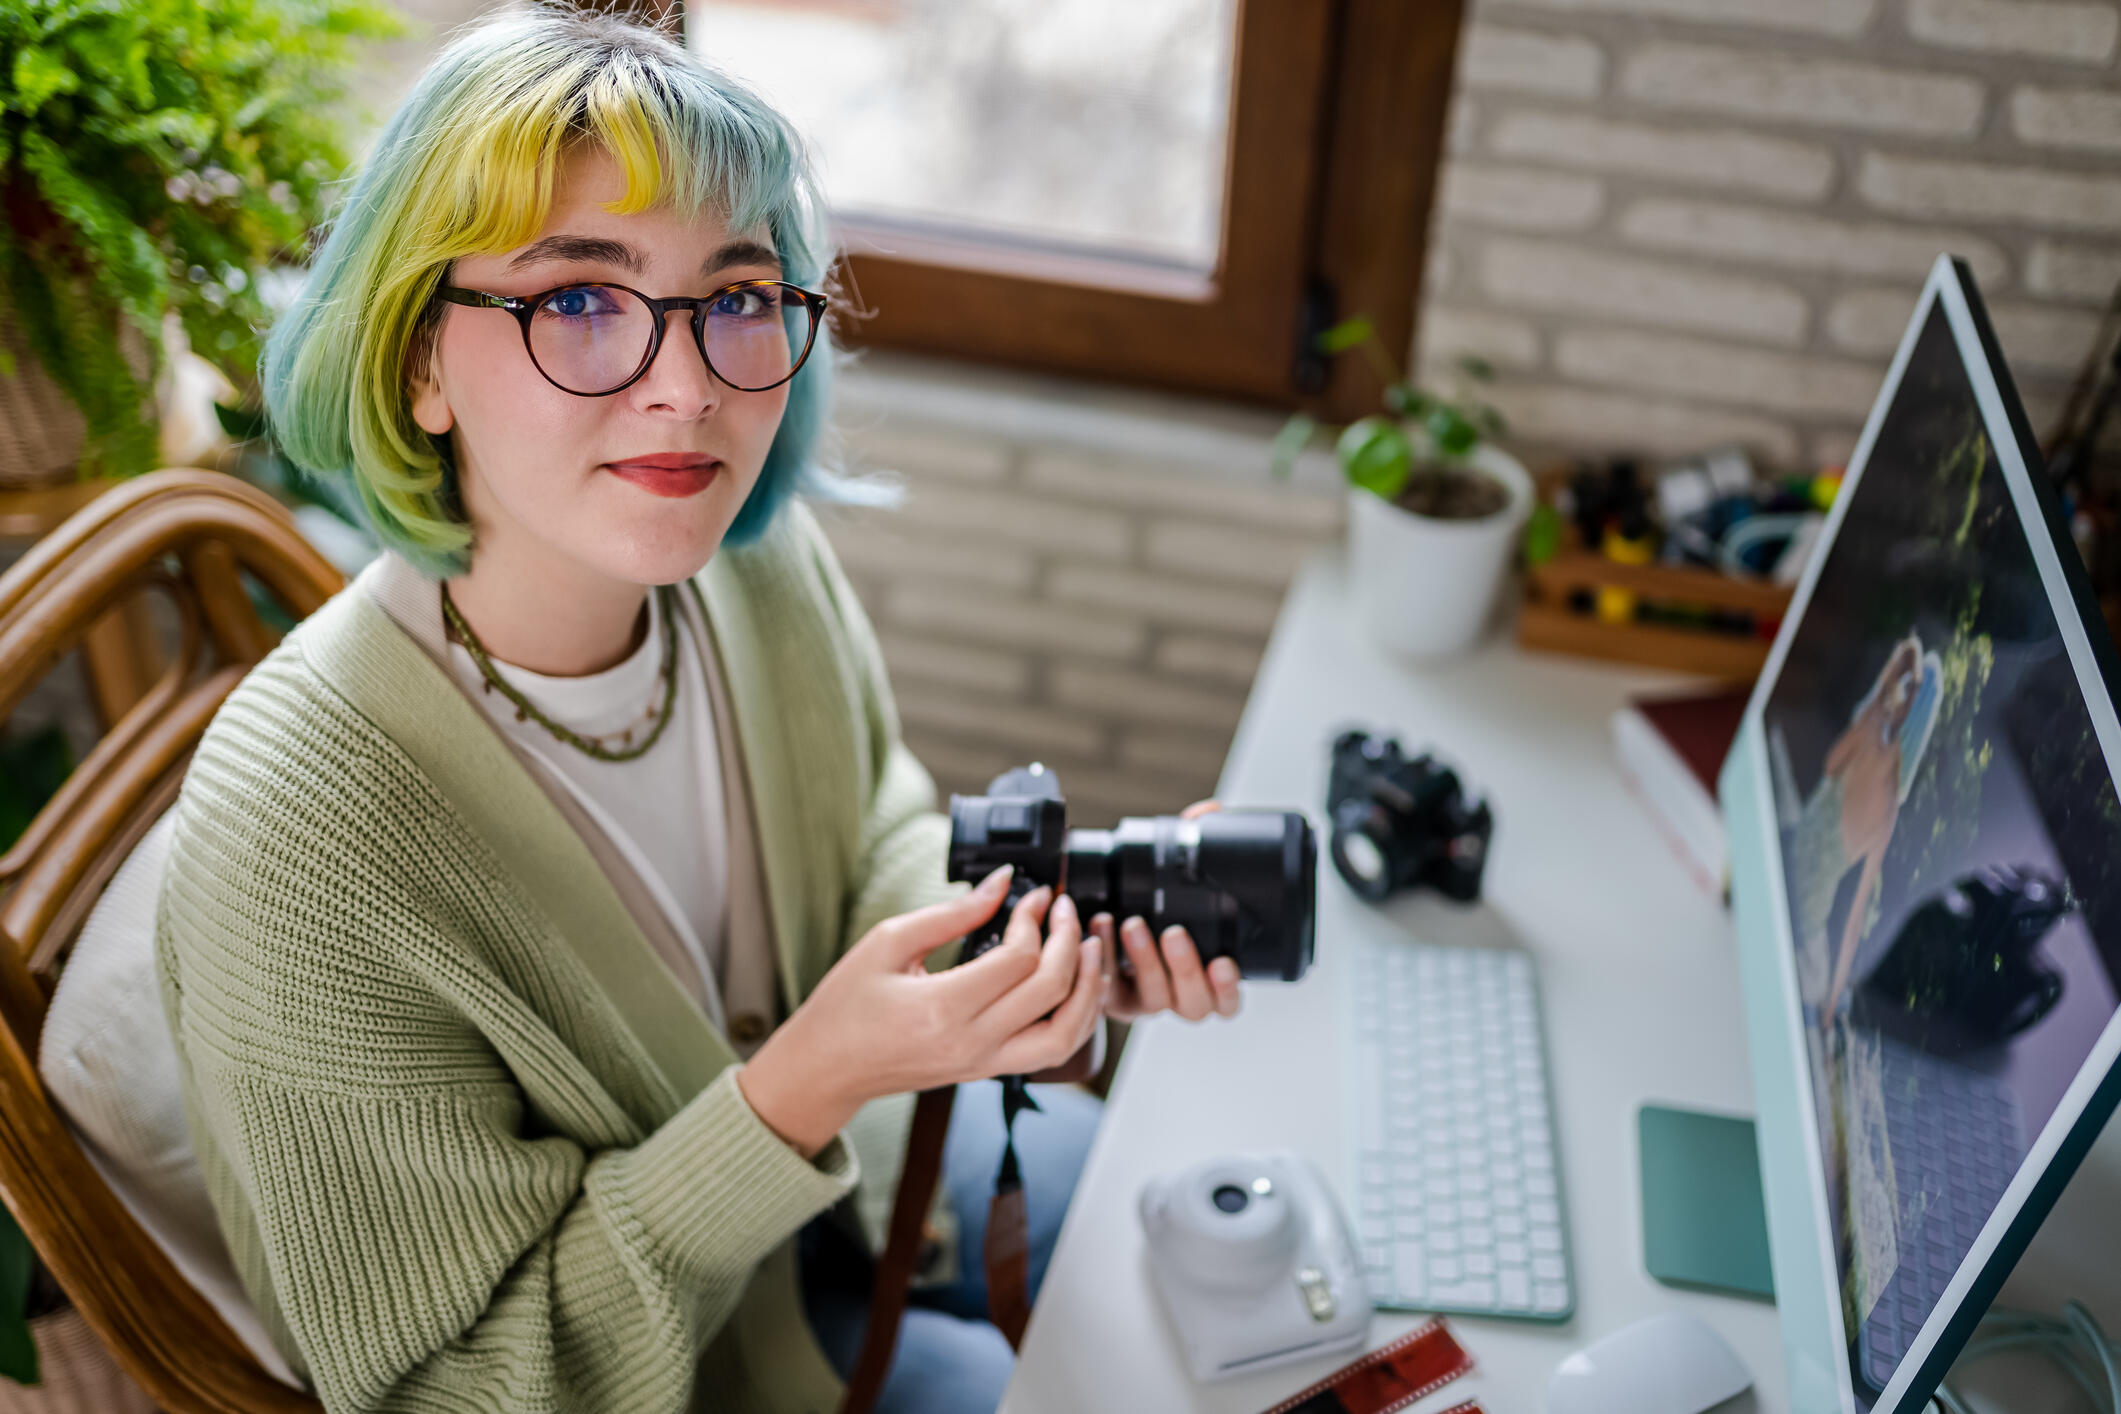 Junge Frau mit bunt gefärbtem Haar sitzt in Agentur an einem Schreibtisch und hat mehrere Fotokameras vor sich.